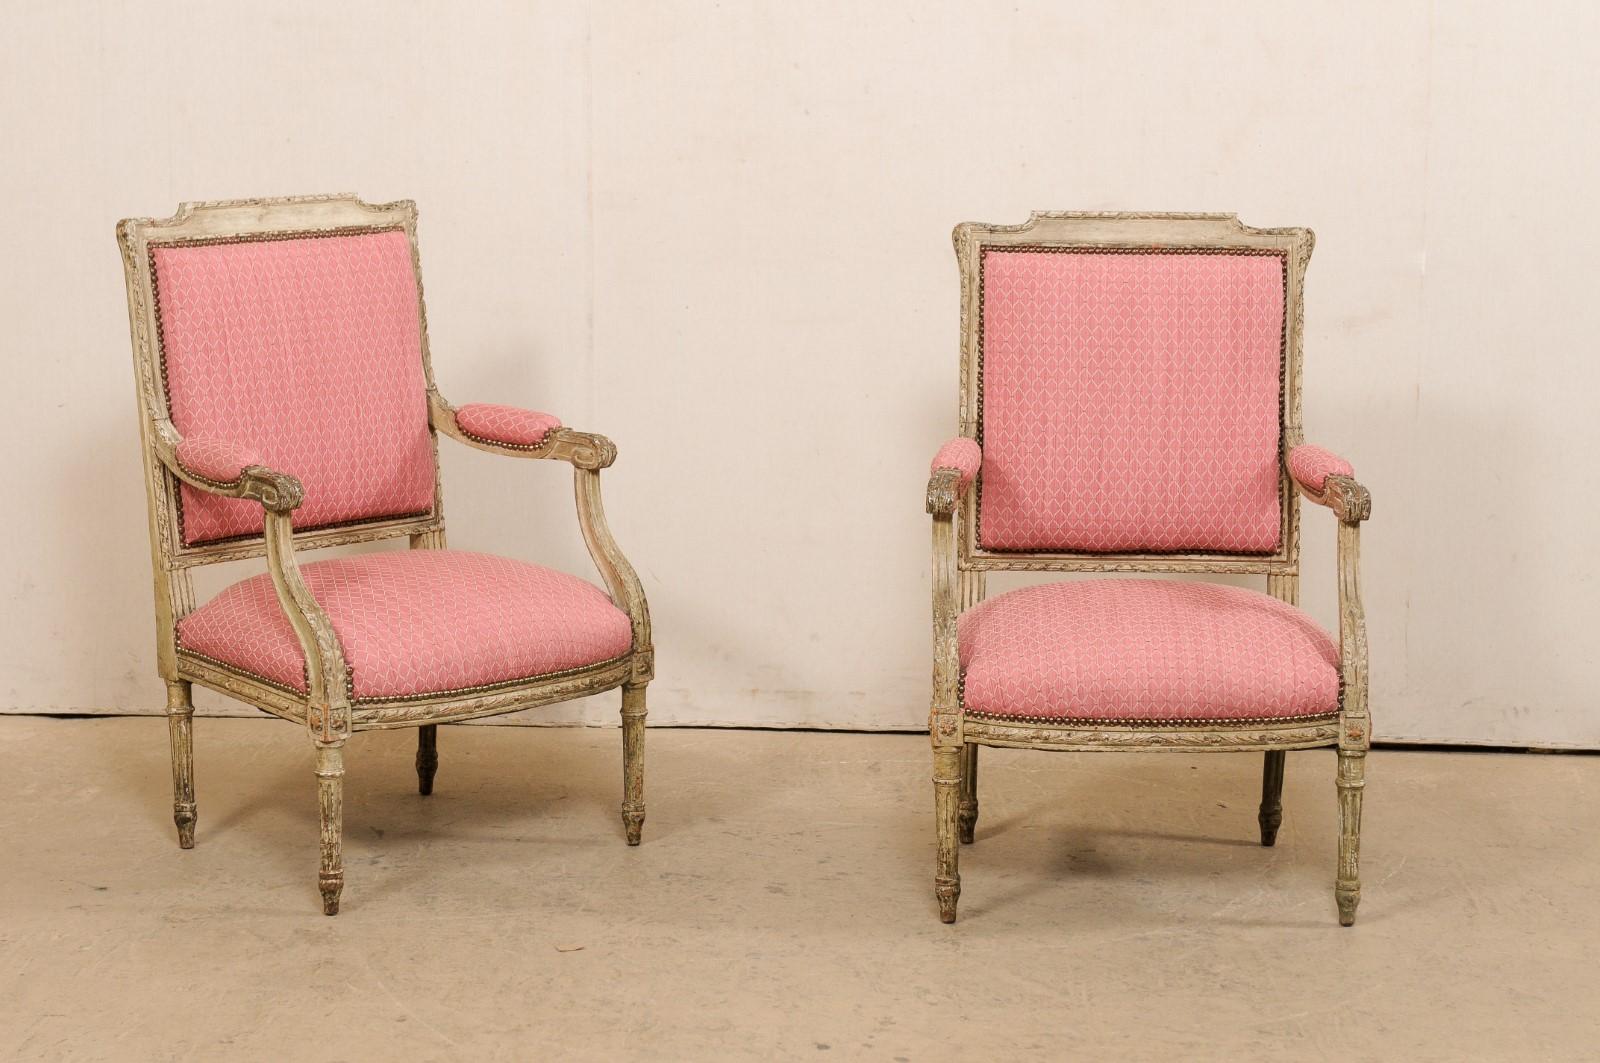 Paire de fauteuils de style Louis XV, en bois sculpté, datant du début du 20e siècle. Cette paire de fauteuils anciens de France a des dossiers rembourrés encadrés dans un cadre en bois magnifiquement sculpté et bordé de rubans. Les accoudoirs en